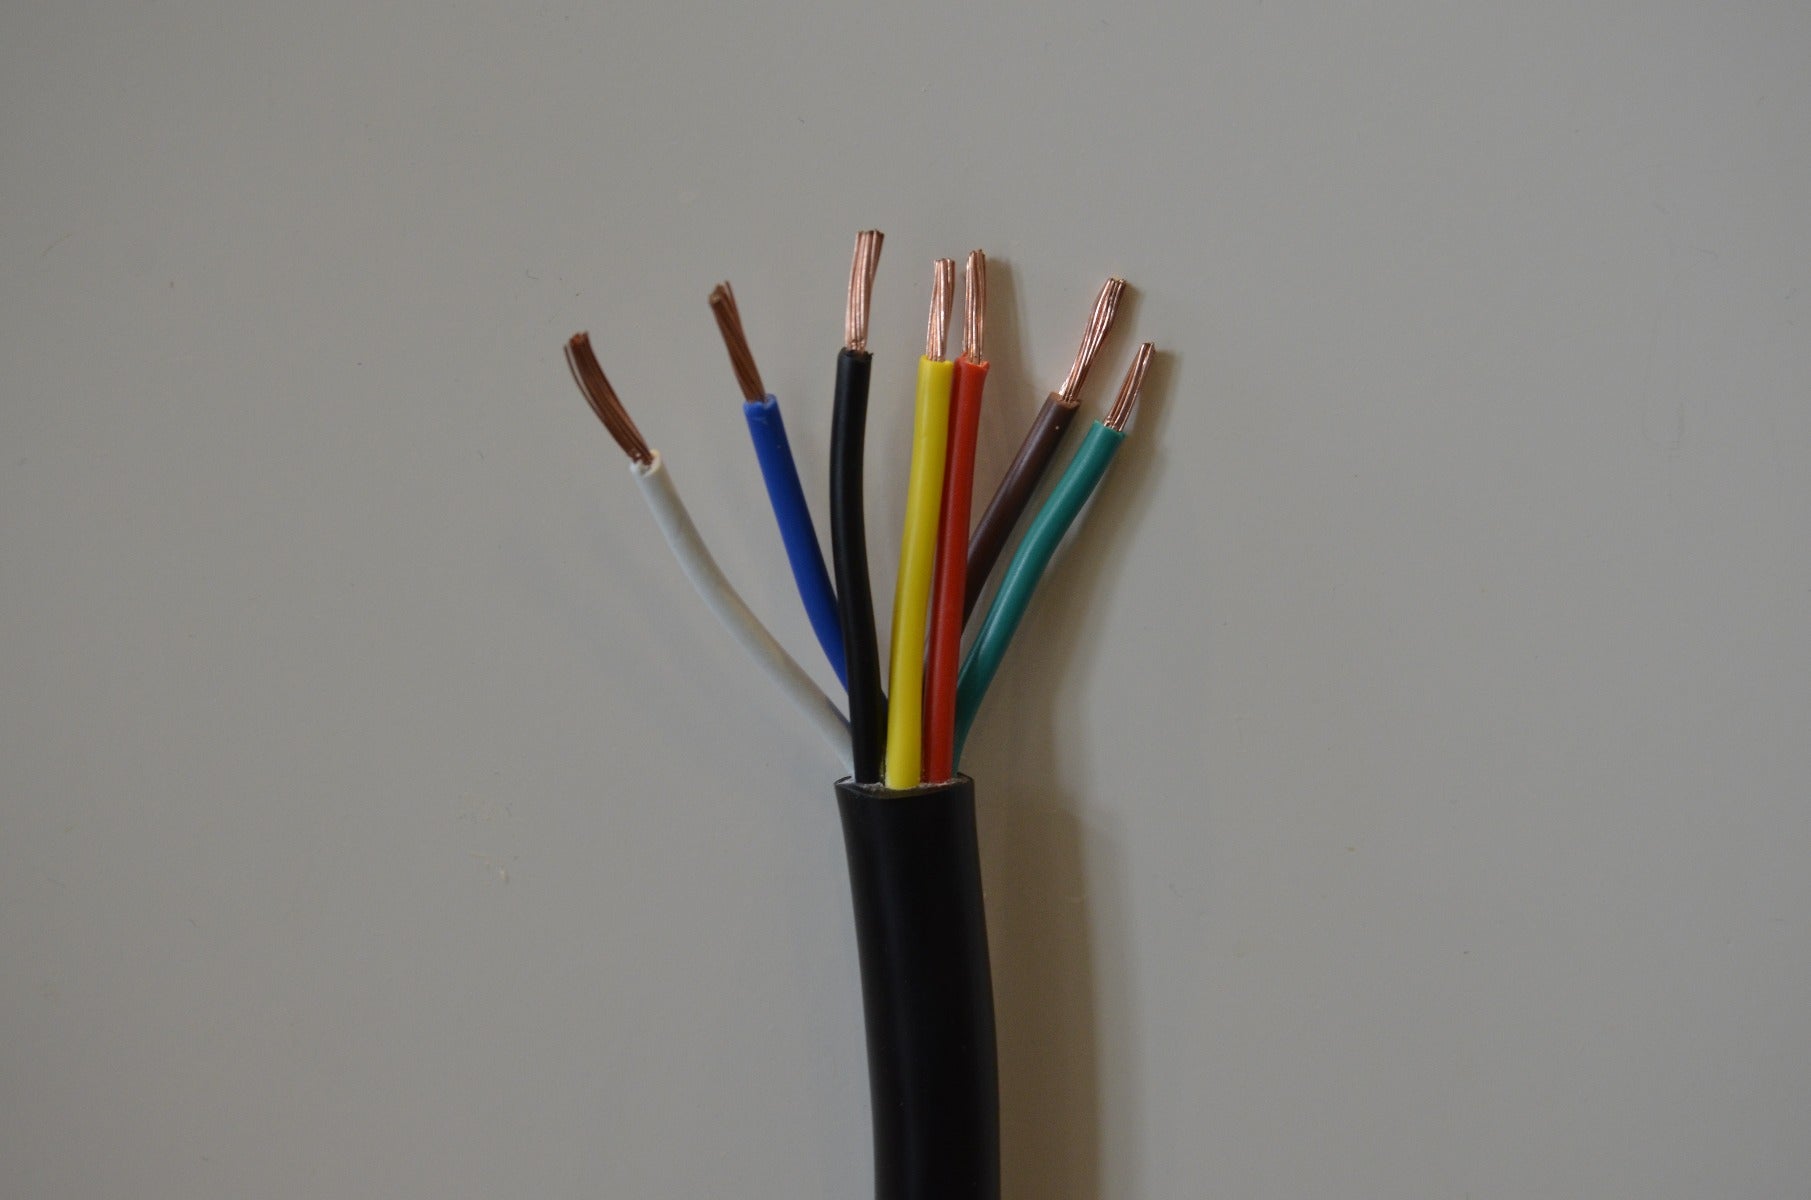 14 GA 7 Conductor Copper Wire Trailer wire